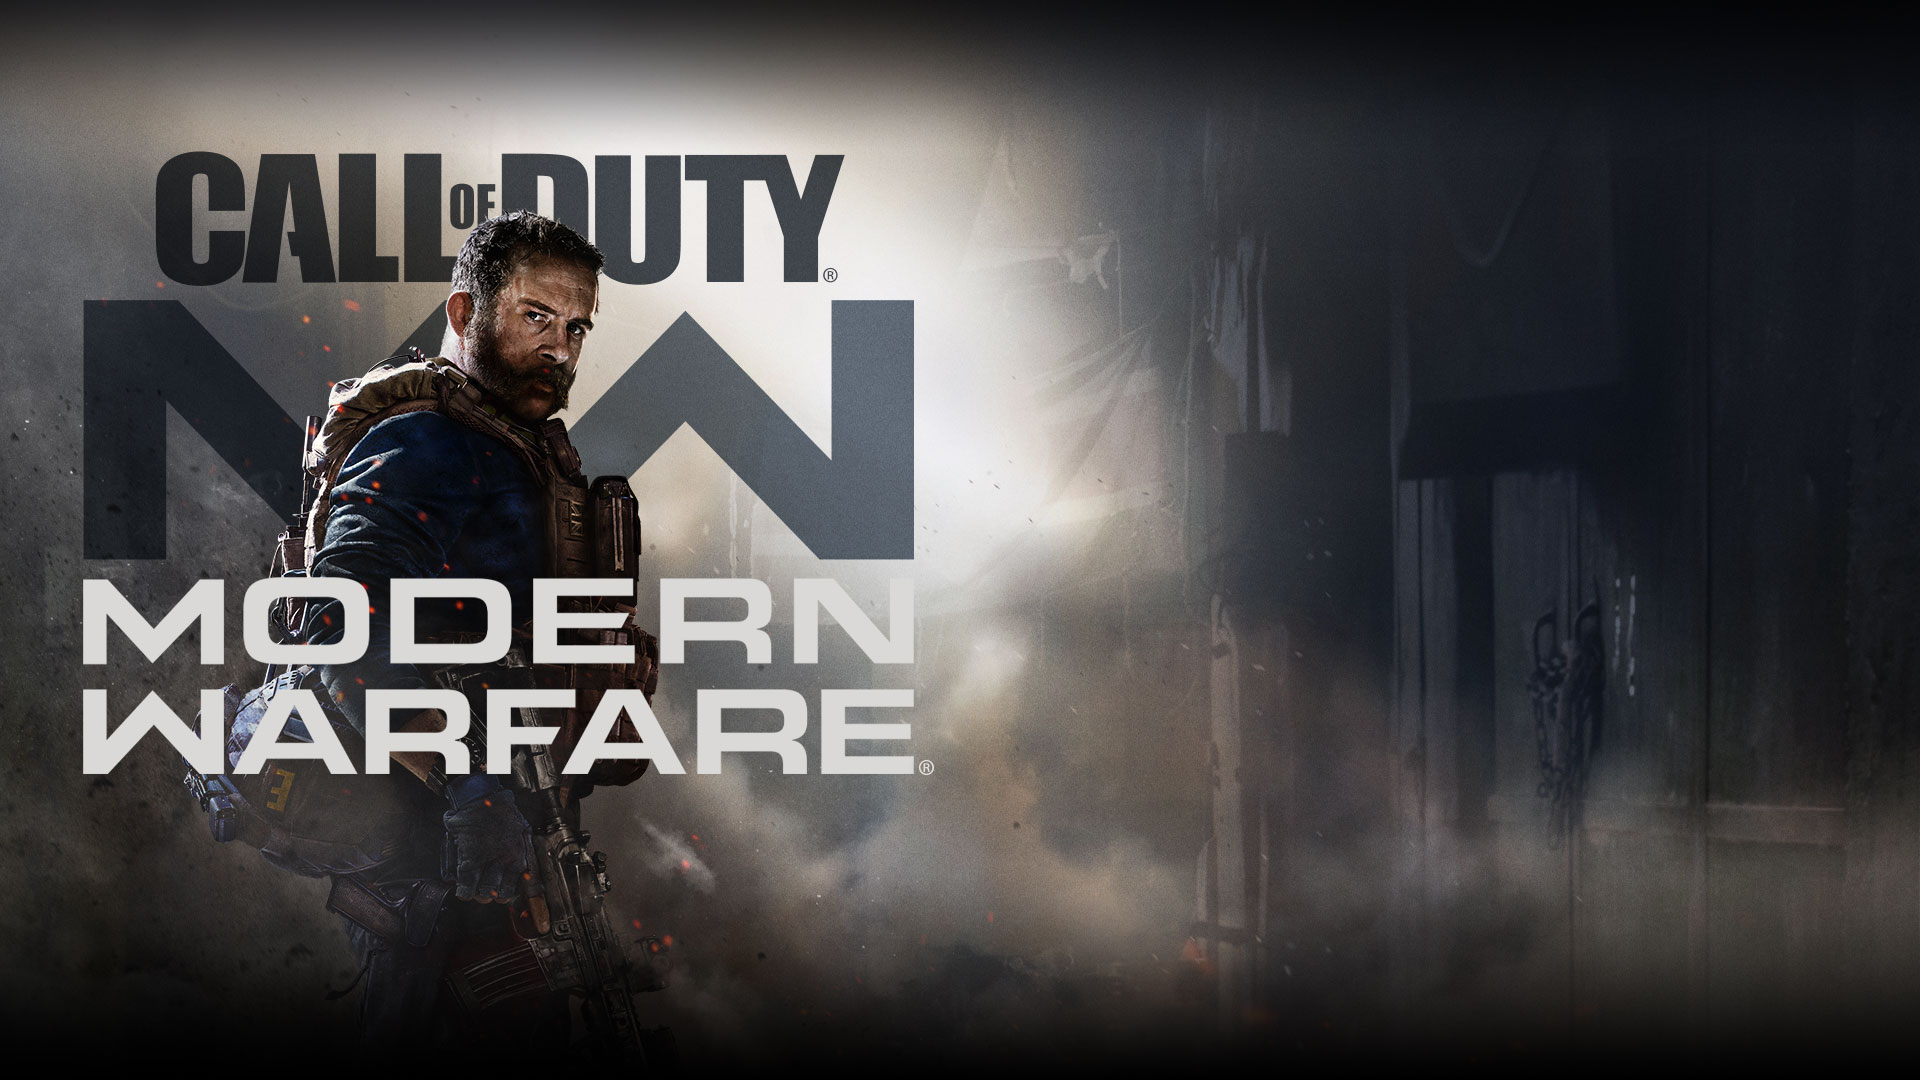 Call of Duty: Modern Warfare-logo met het personage Captain Price in het blauw met militair vest